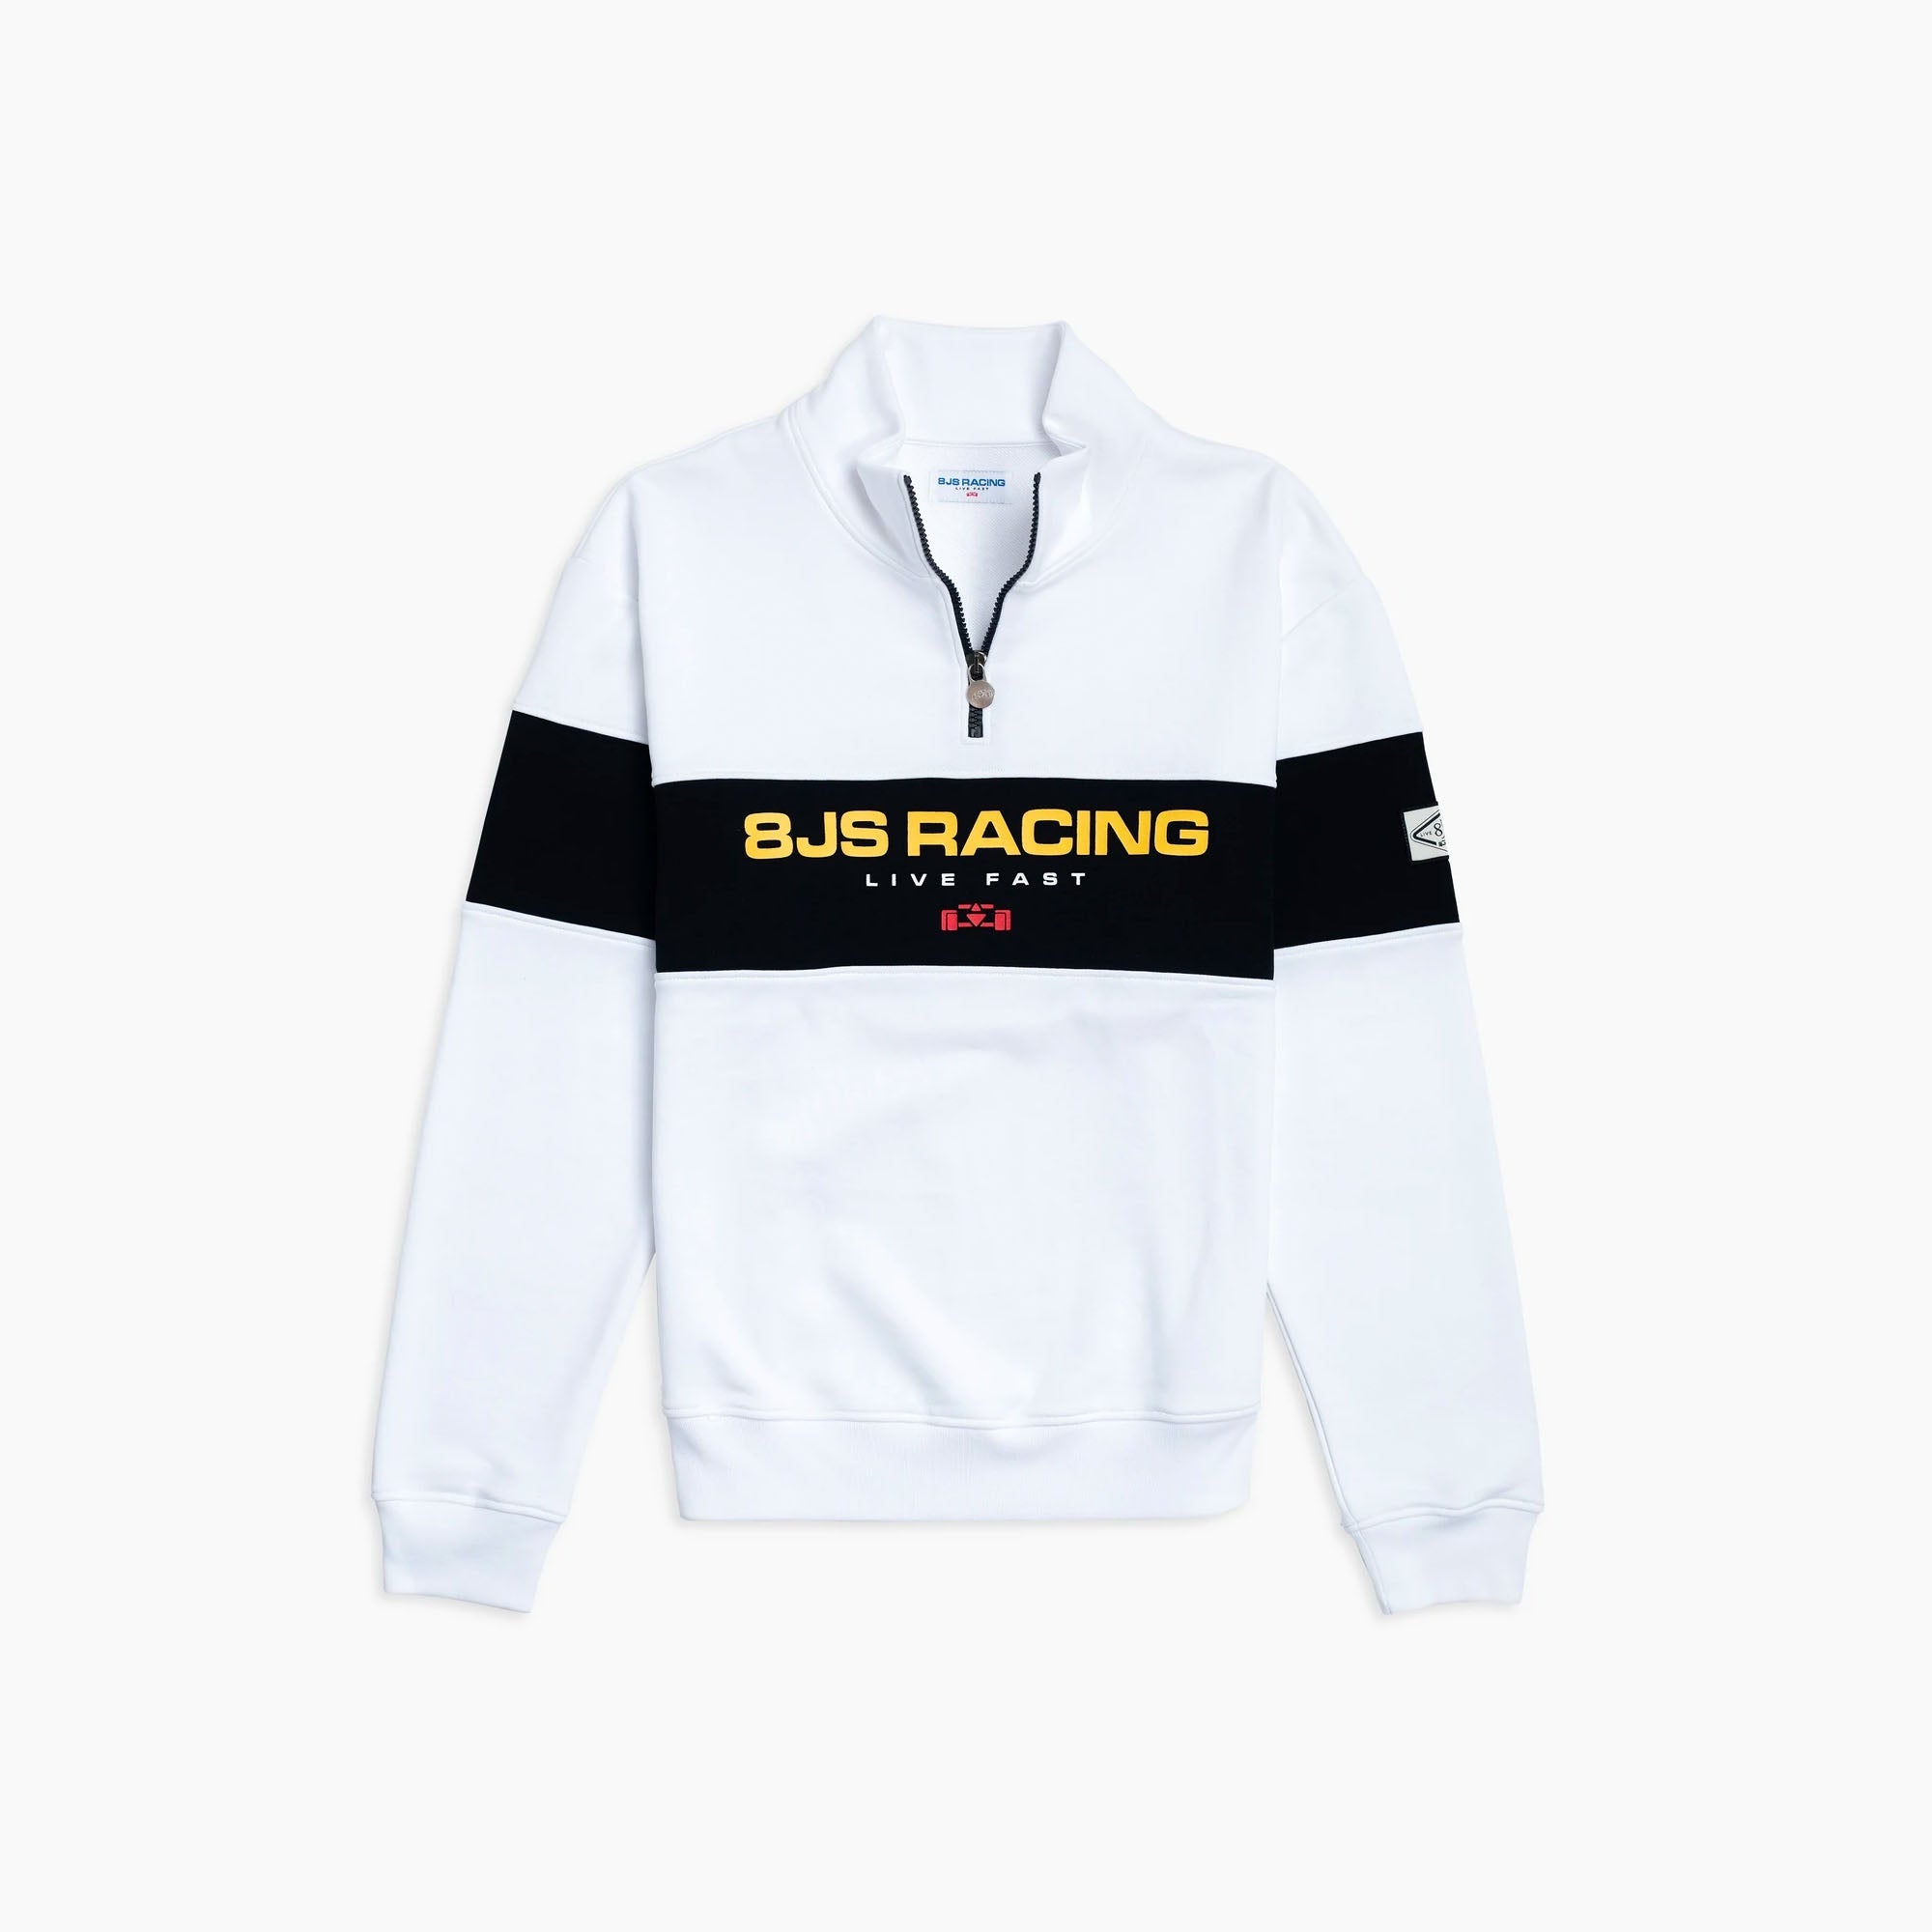 8JS | Racing Half Zip White Sweatshirt-Sweatshirt-8JS-gpx-store